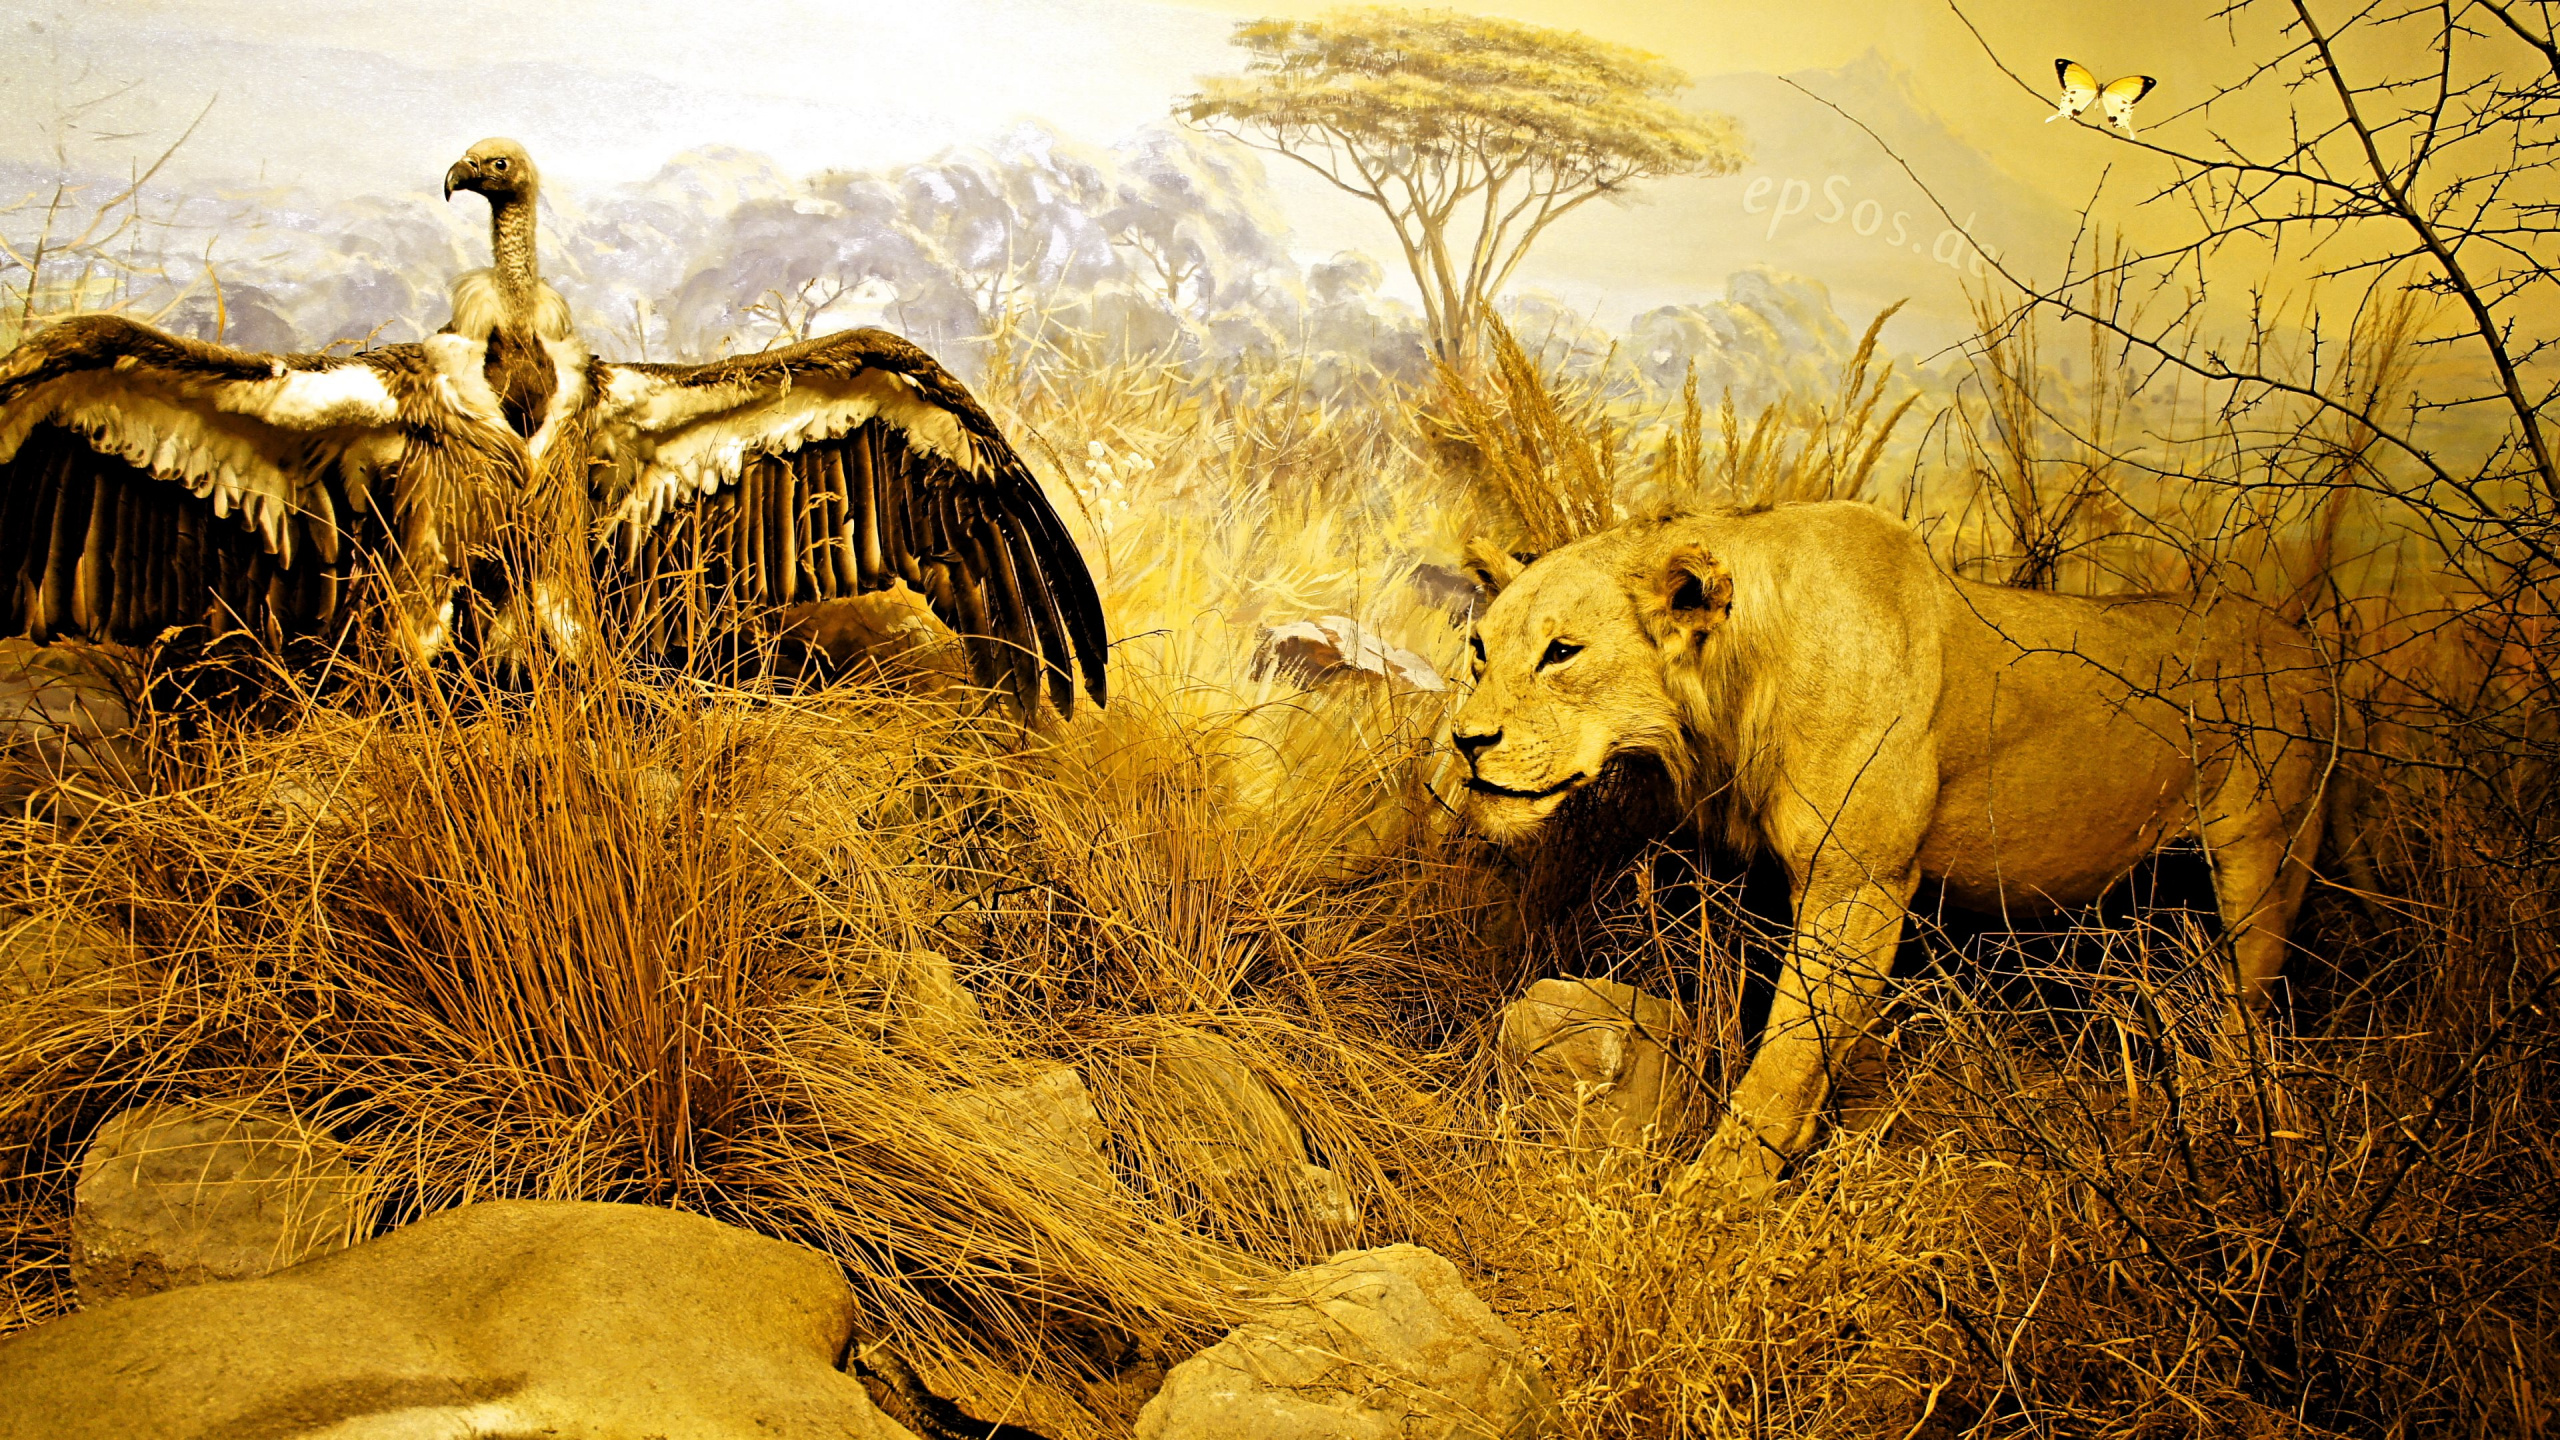 狮子, Safari, 野生动物, 稀树草原, 黄色的 壁纸 2560x1440 允许